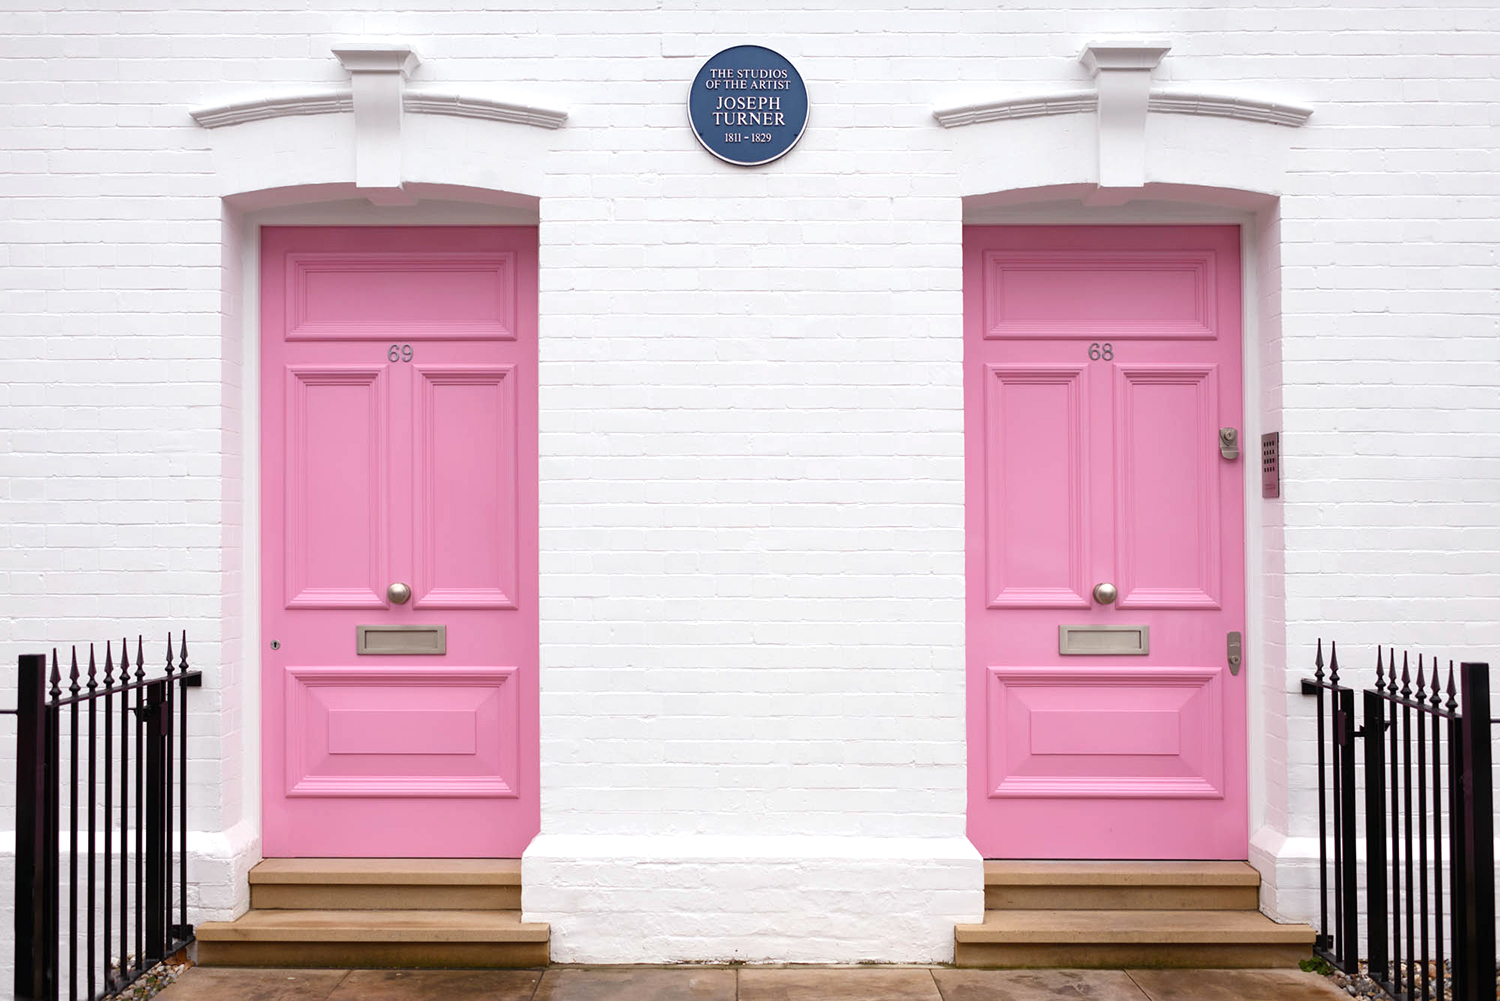 London's 5 prettiest doors - Pretty Little London